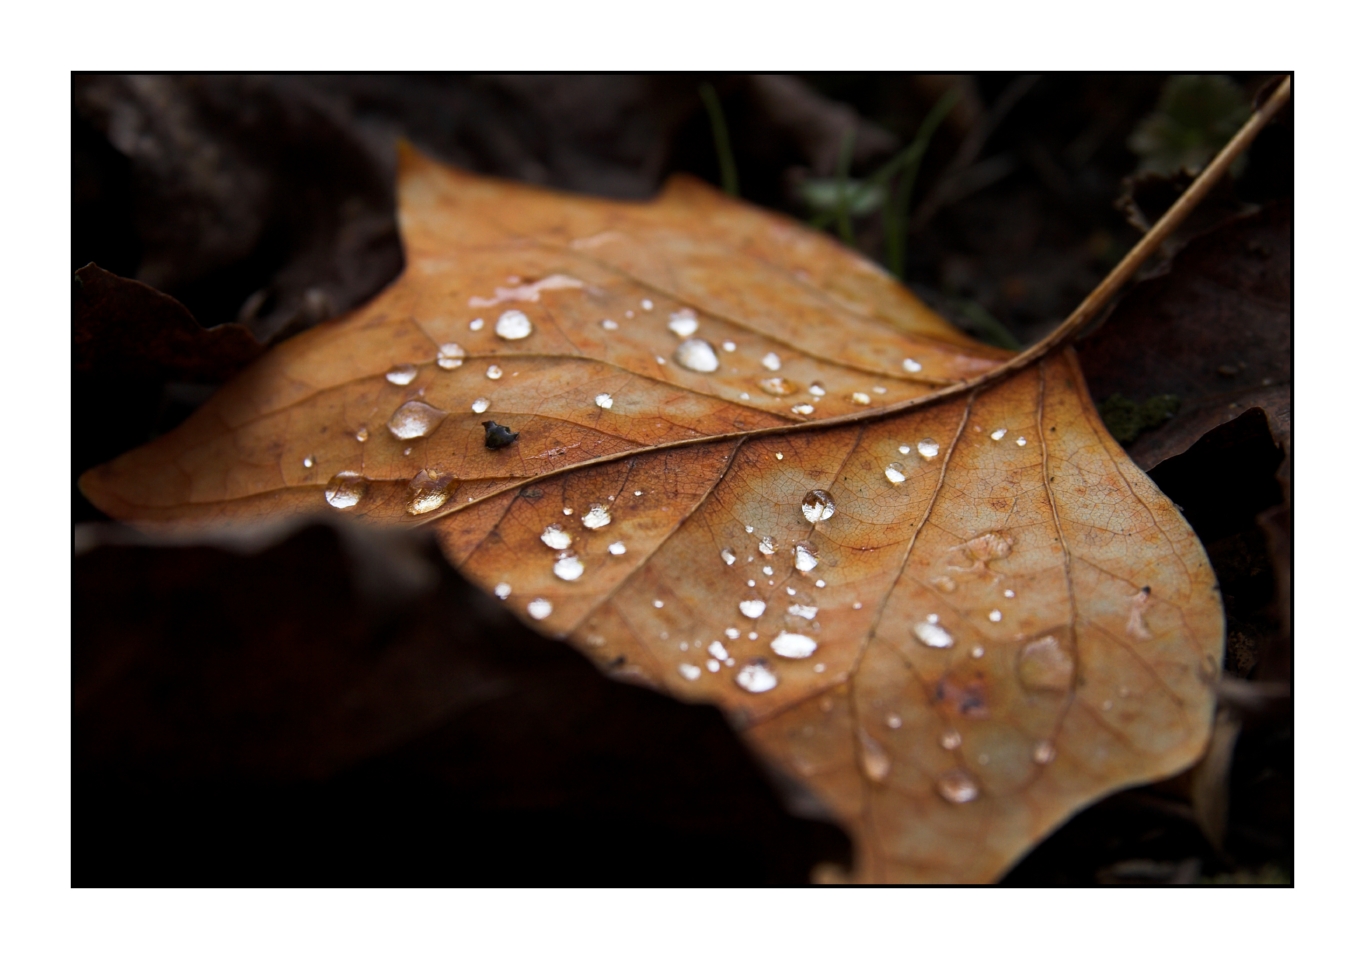 30 October - fallen leaf